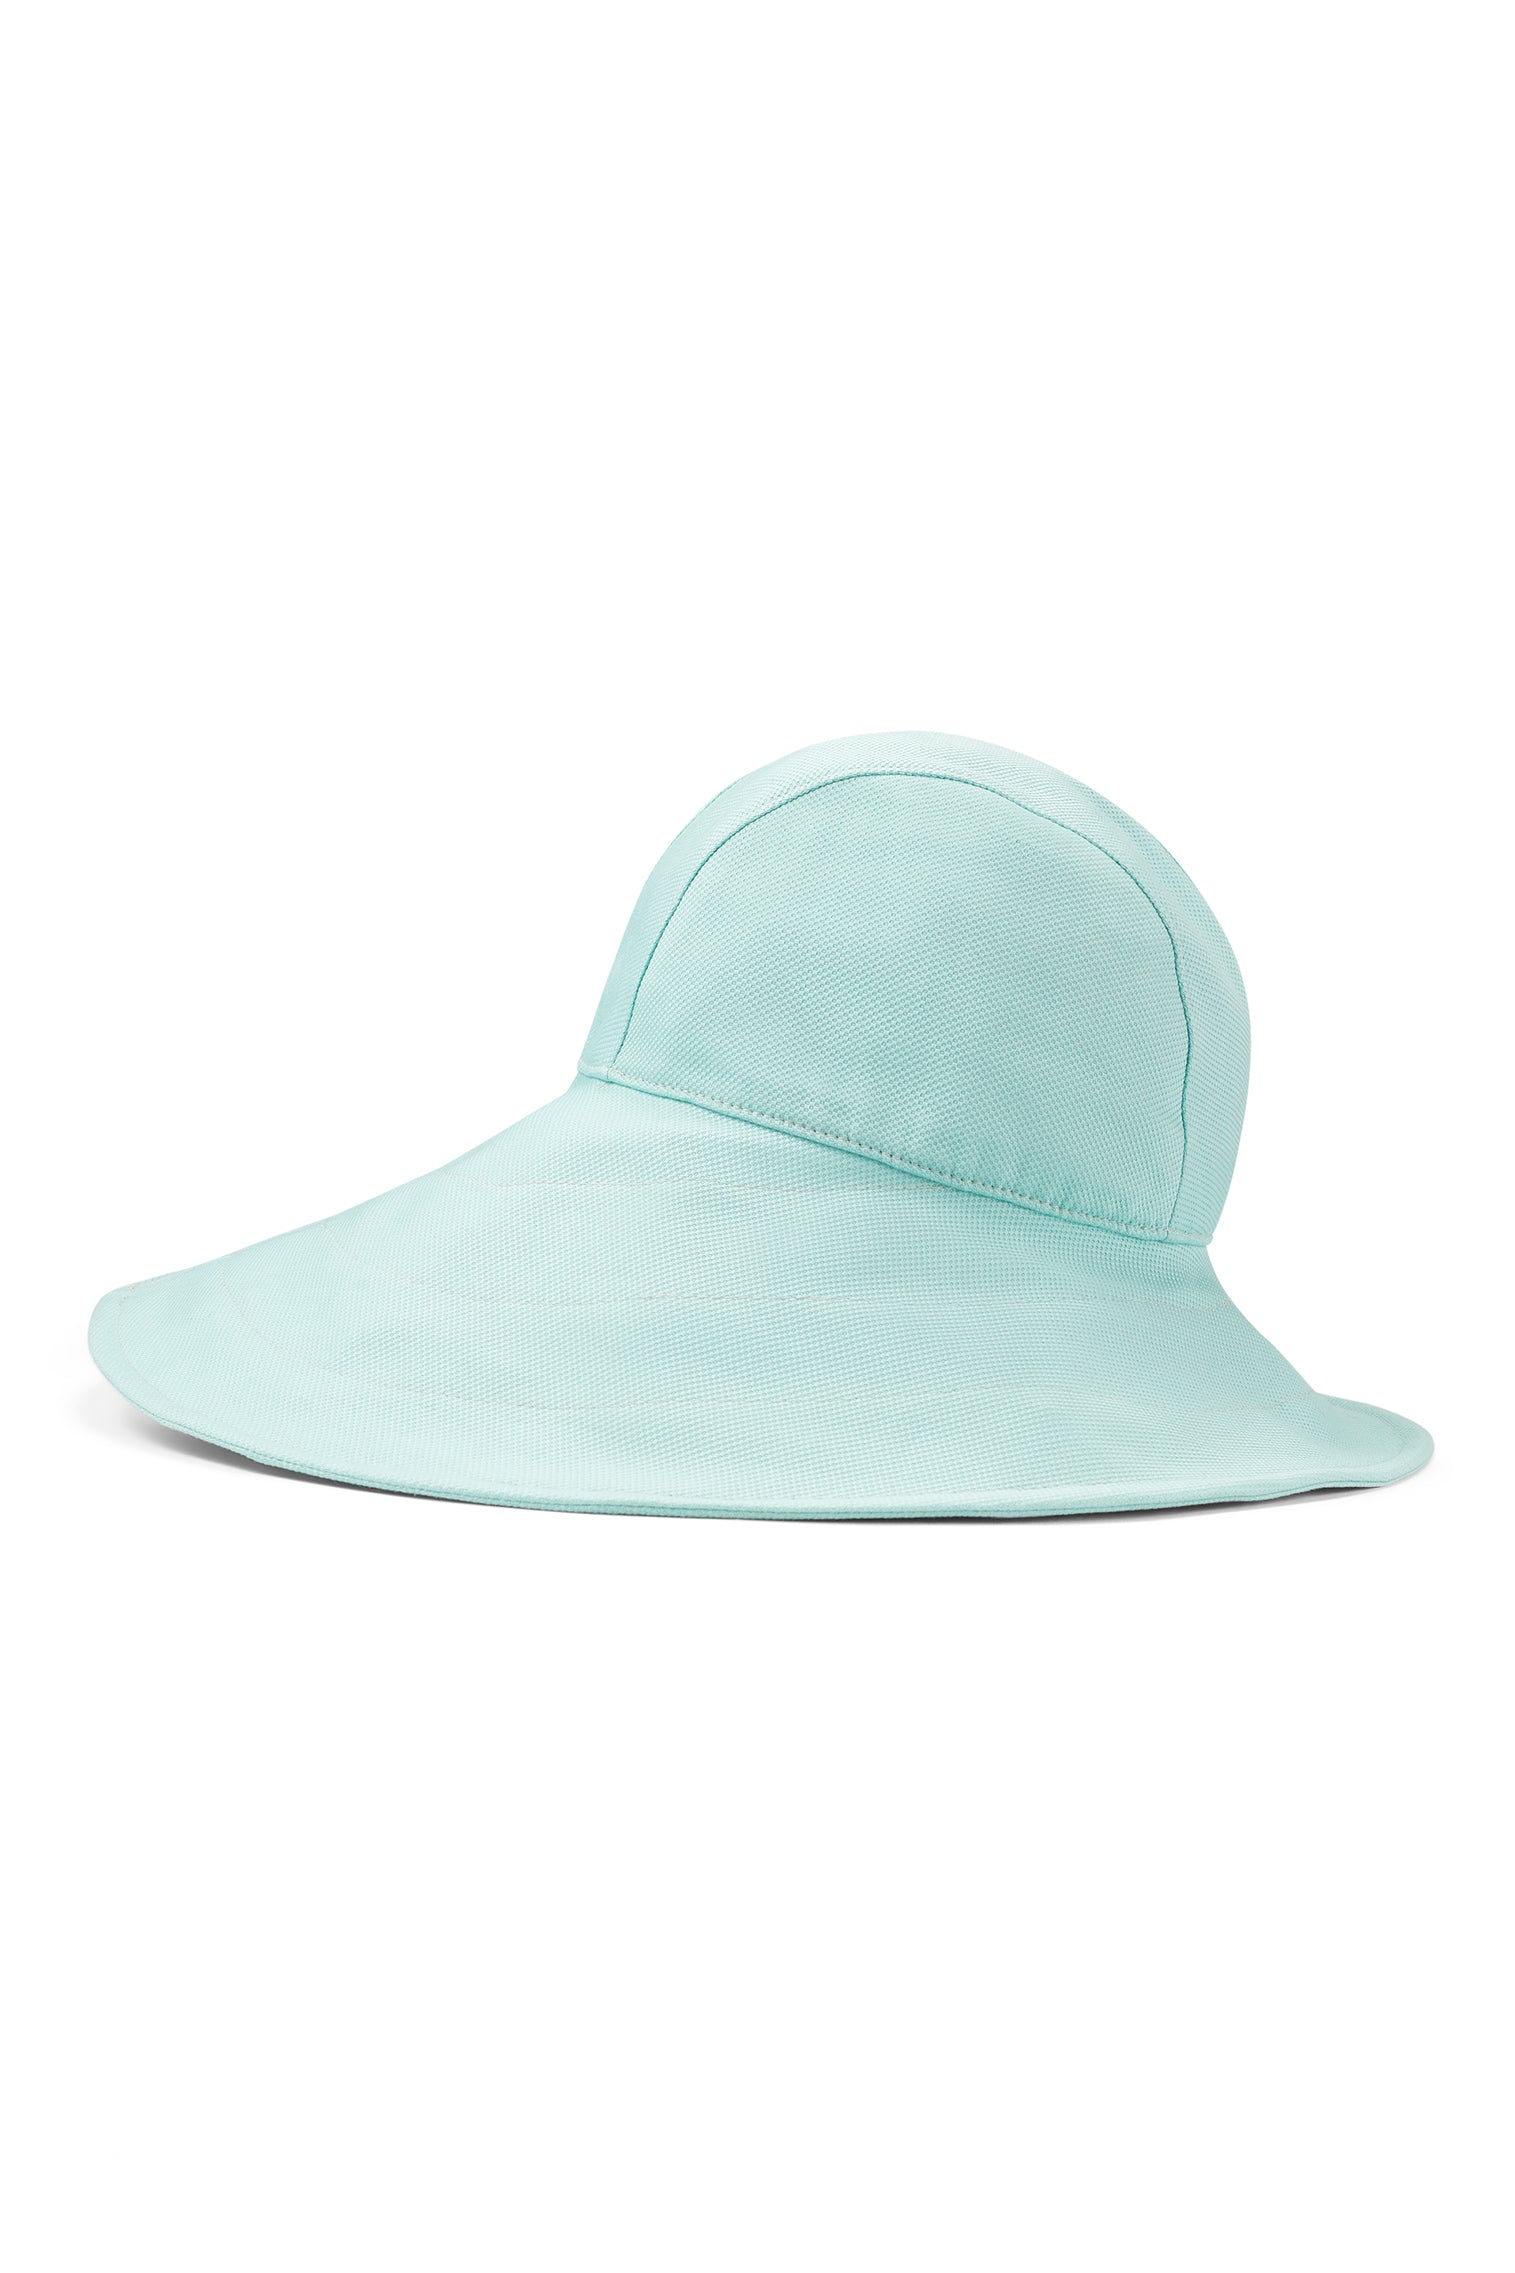 Elowyn Sou'Wester Sun Hat -  - Lock & Co. Hatters London UK